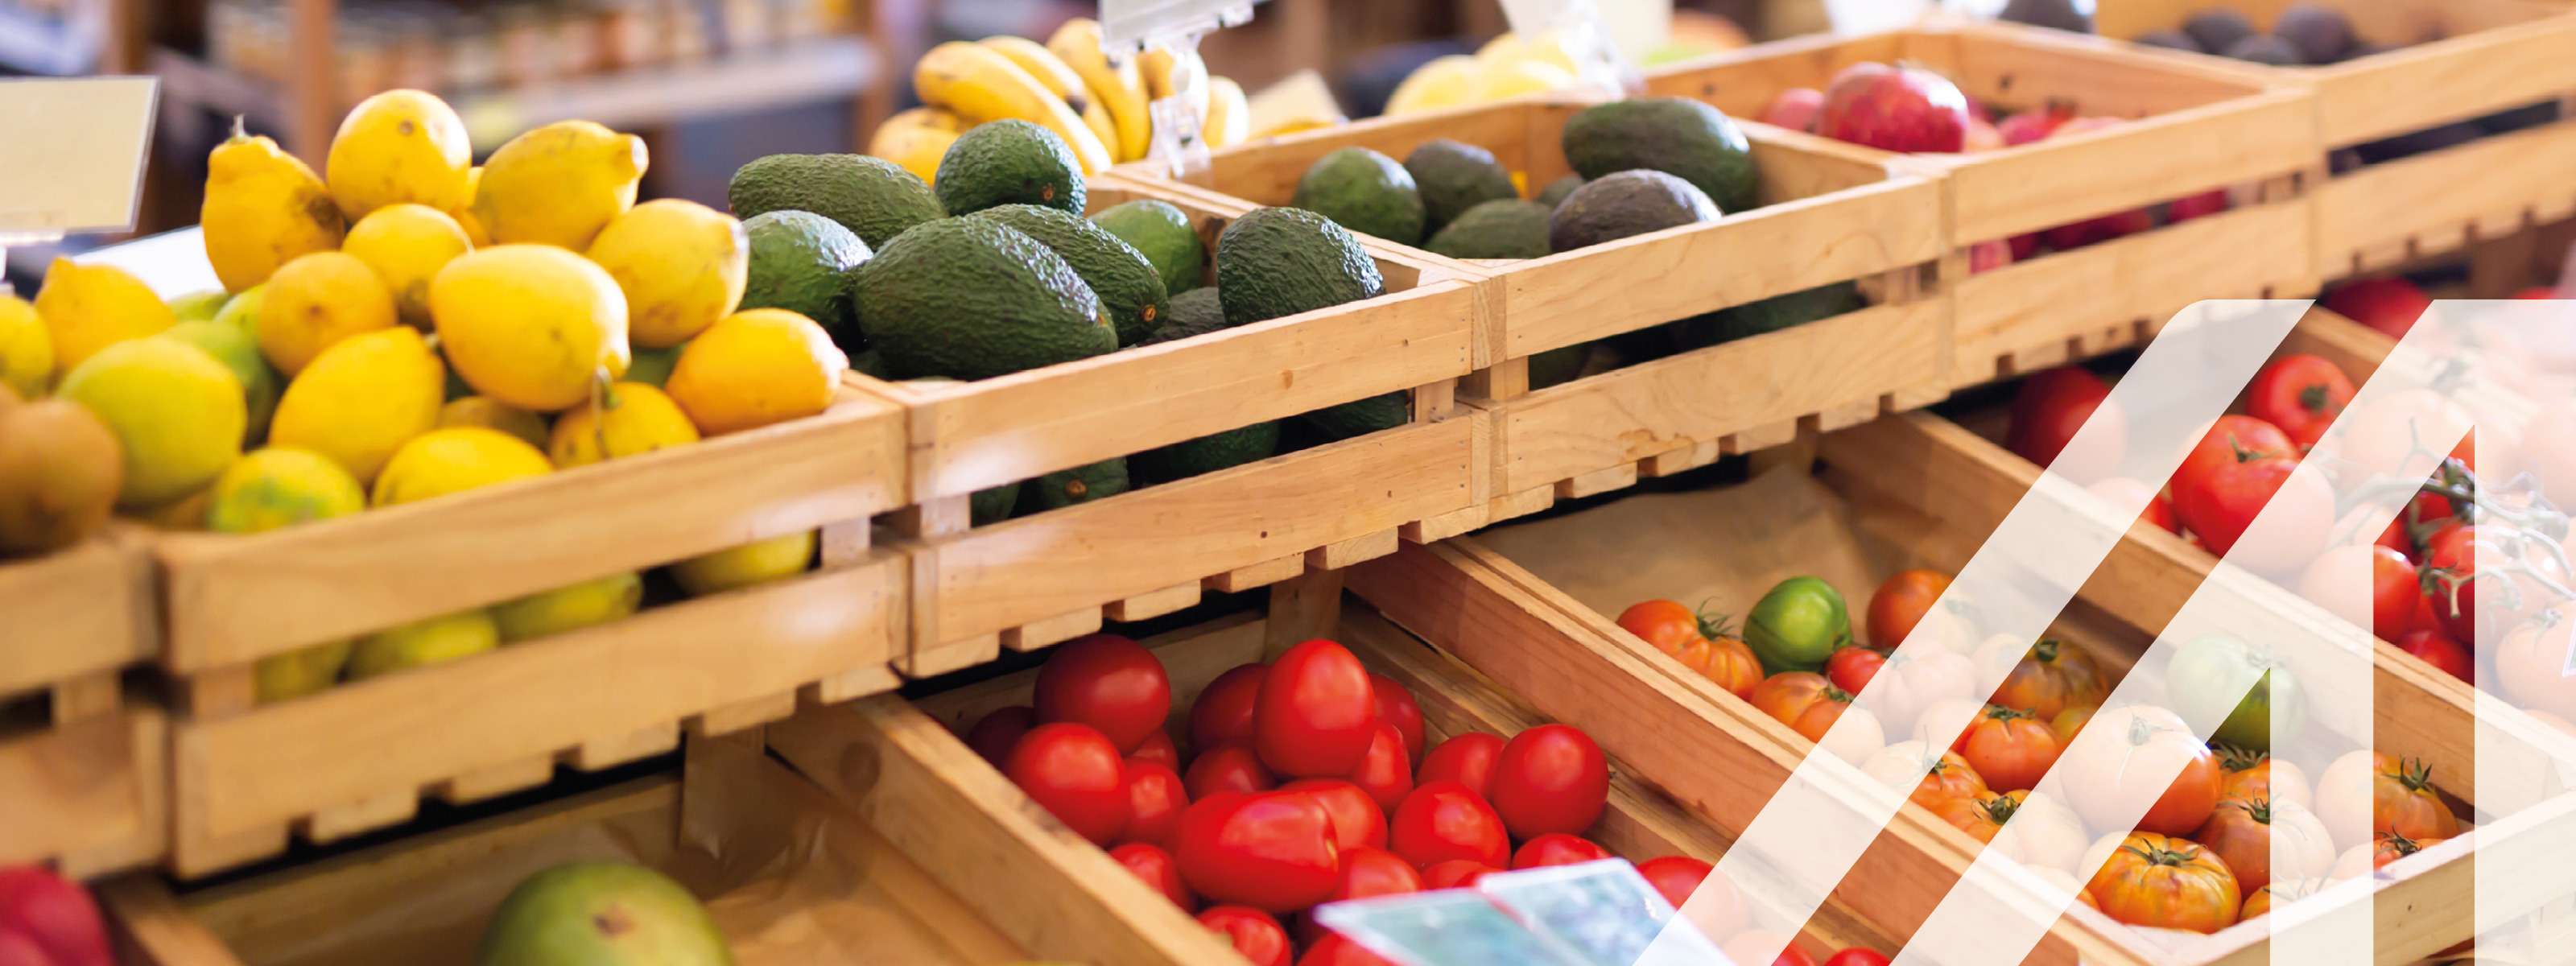 Frisches Obst und Gemüse in Holzkisten auf der Ladentheke in einem Lebensmittelsupermarkt, im Hintergrund sieht man Regale